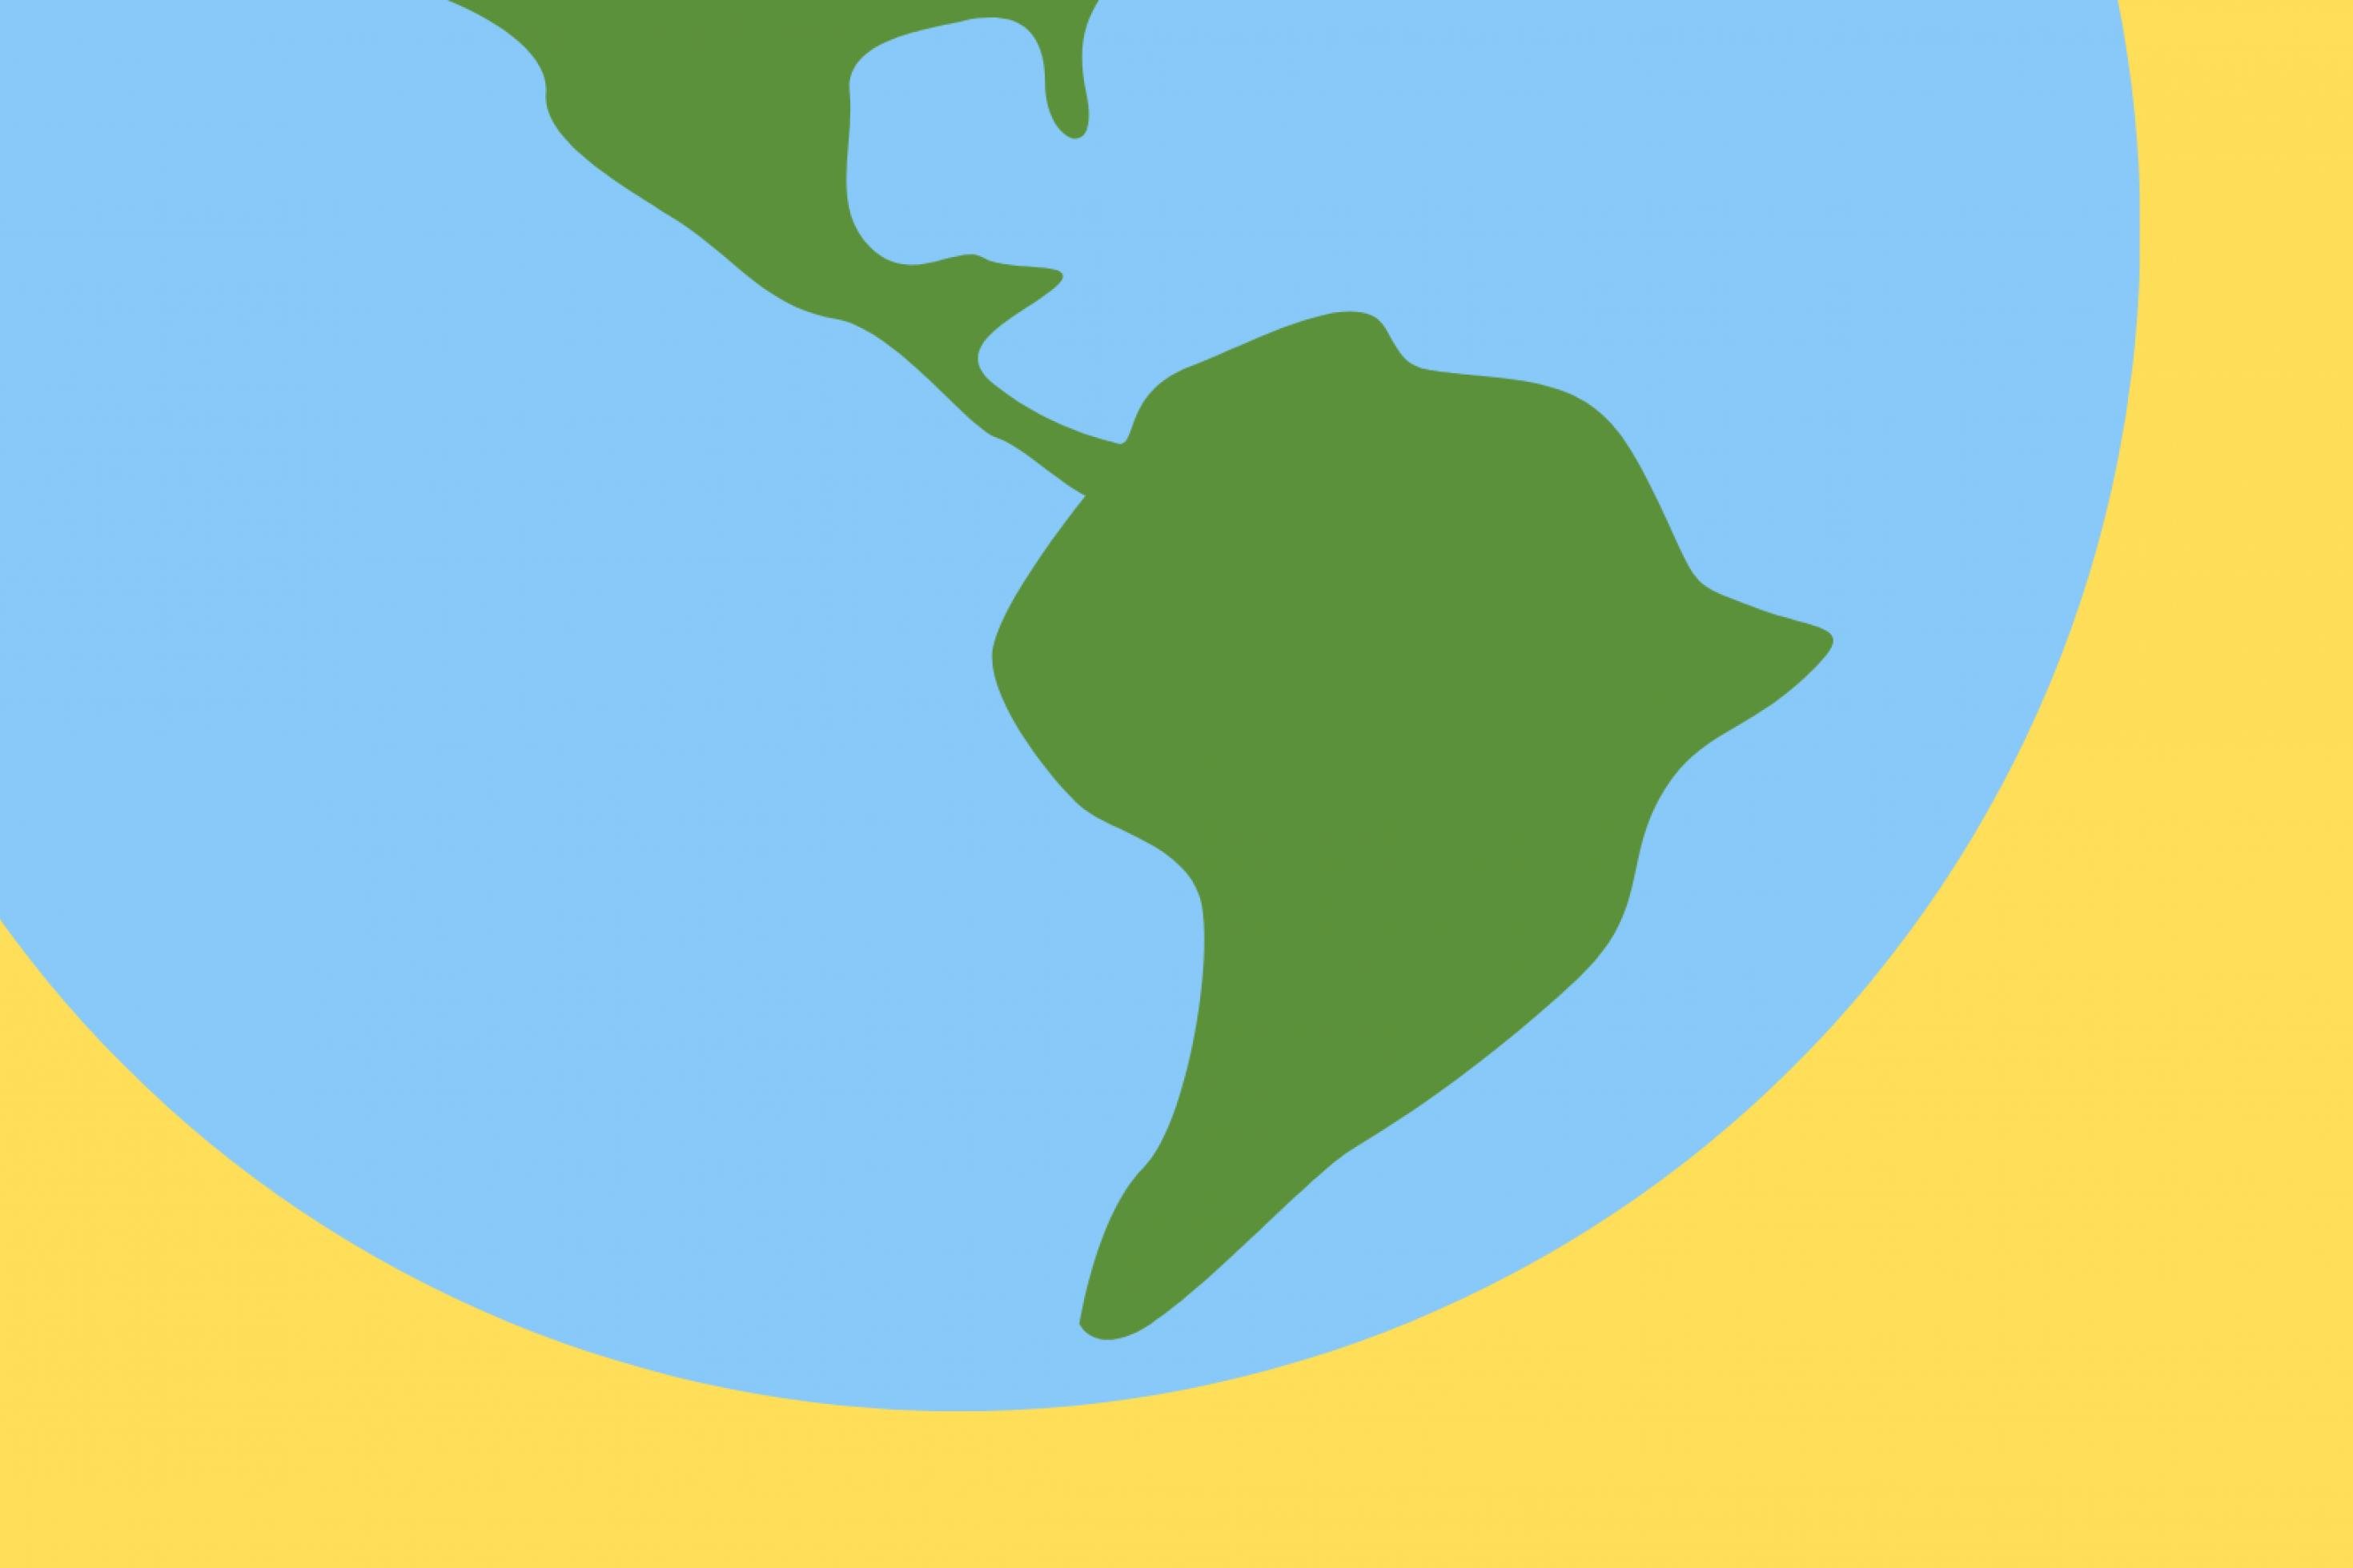 Grafik mit grünem Umriss des südamerikanischen Halbkontinents auf blauem Hintergrund.